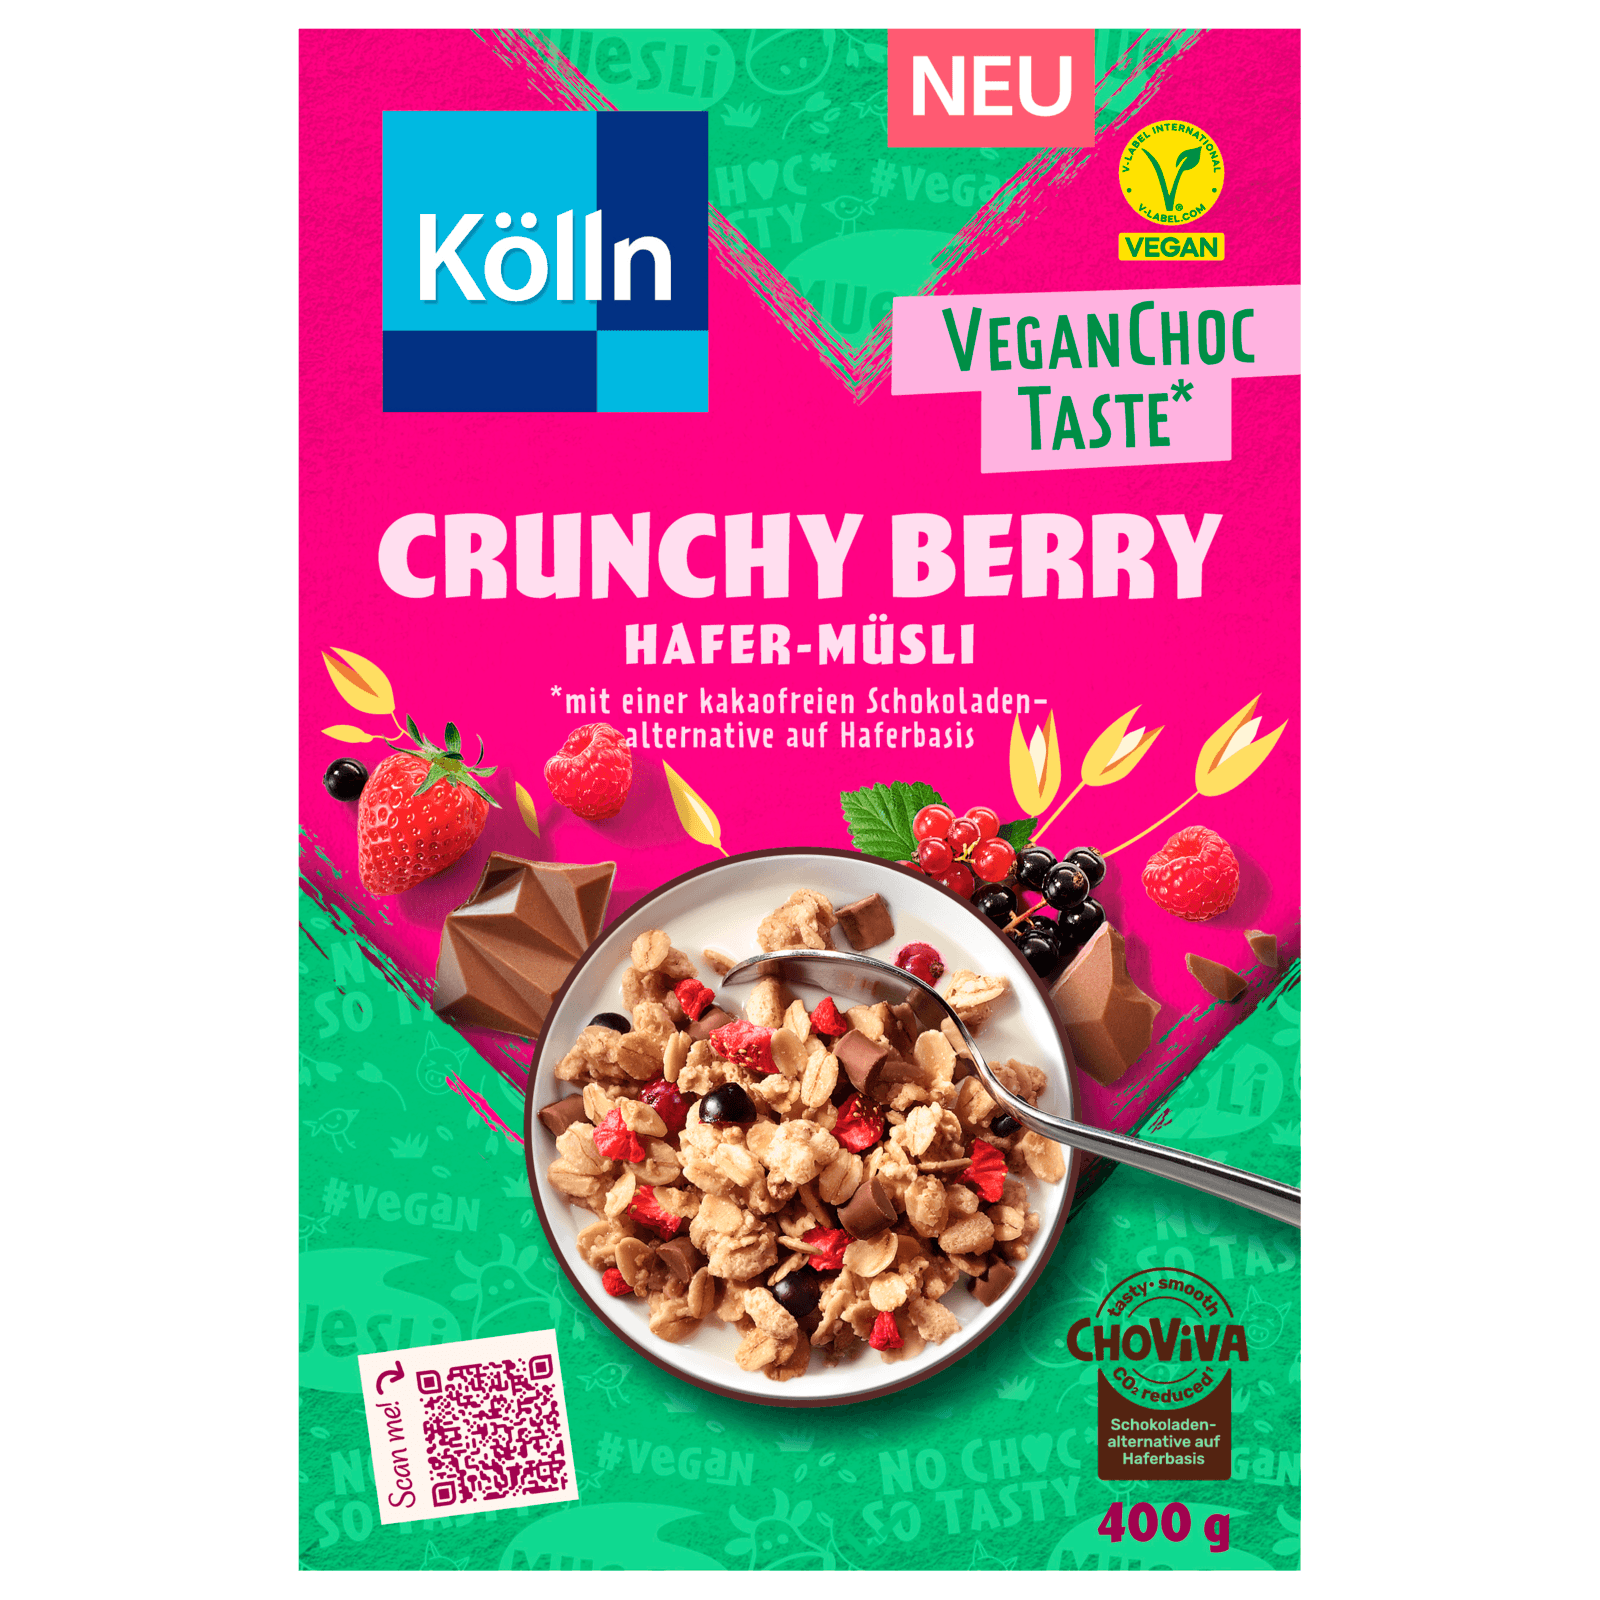 Kölln bestellen! online Hafer-Müsli bei Crunchy vegan VeganChocTaste REWE Berry 400g